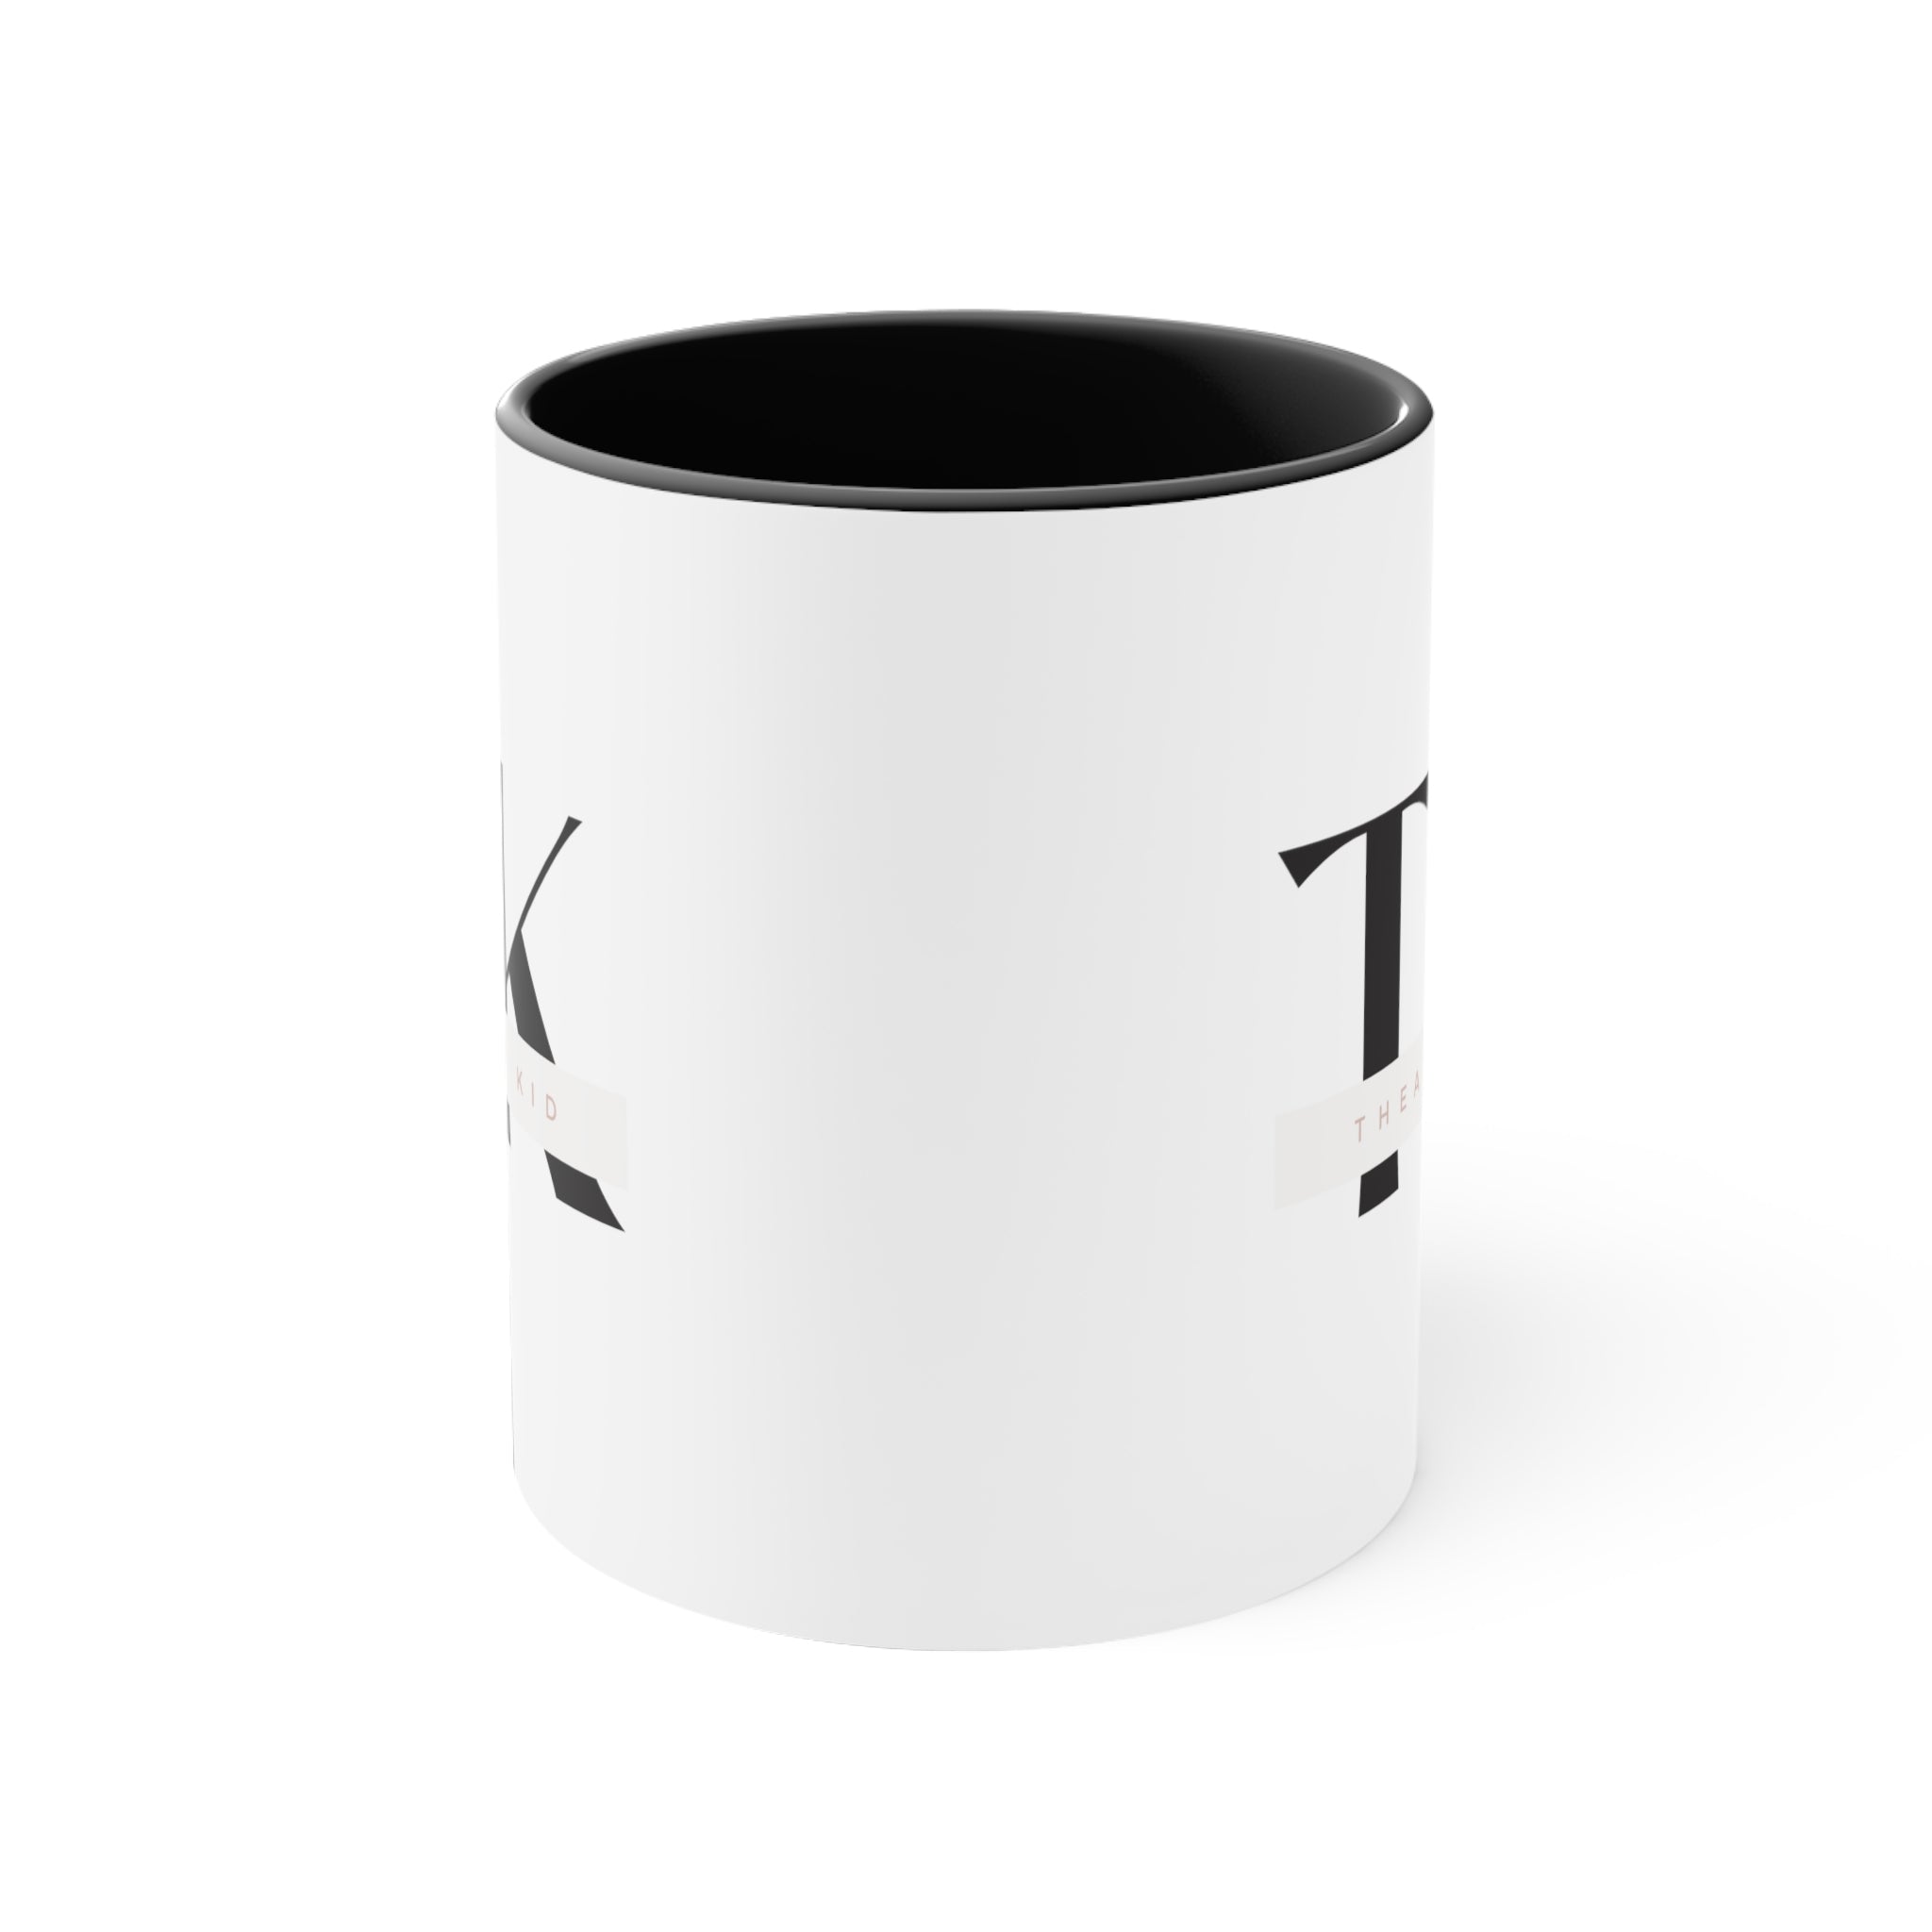 "Theatre Kid" - 11oz Coffee Mug